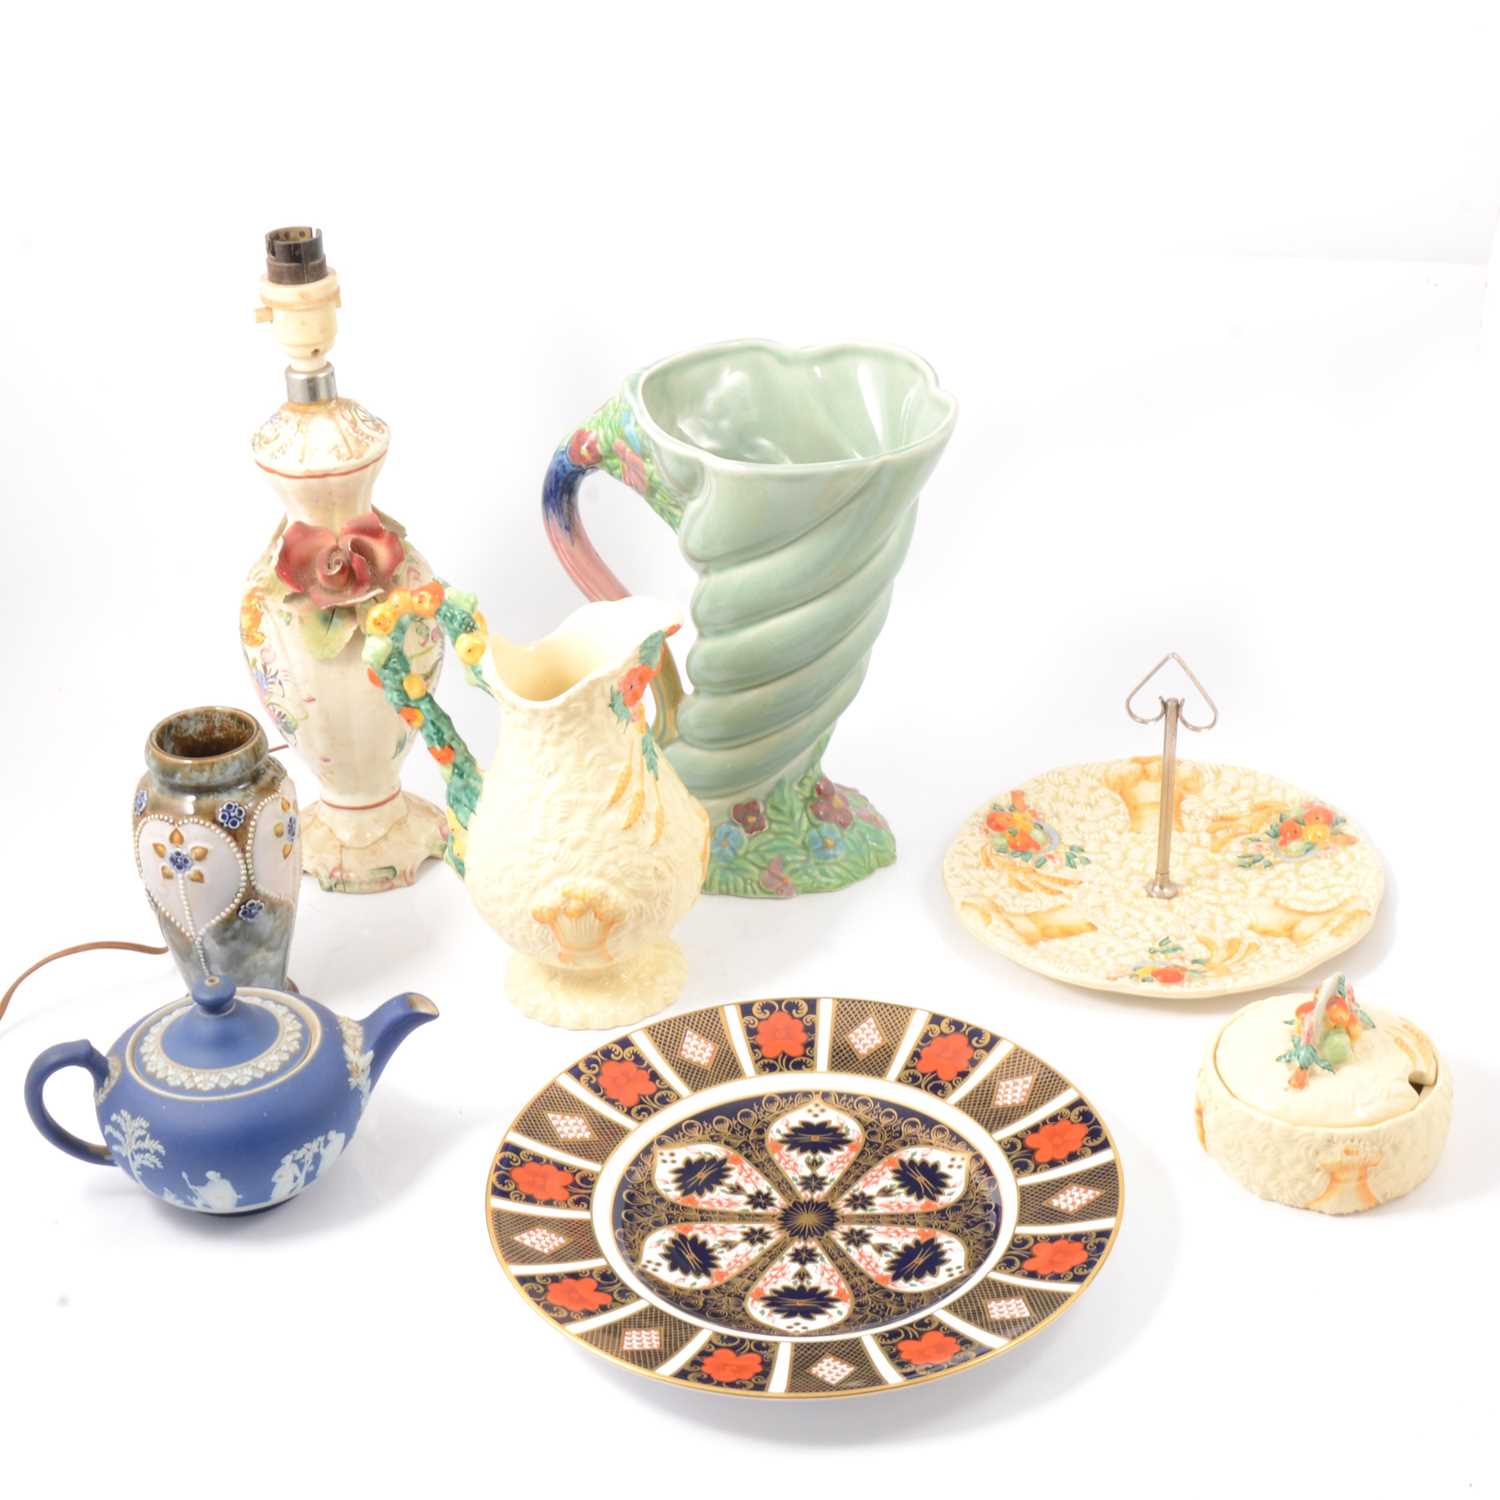 Lot 18 - Quantity of decorative ceramics including Crown Derby, Clarice Cliff, etc.